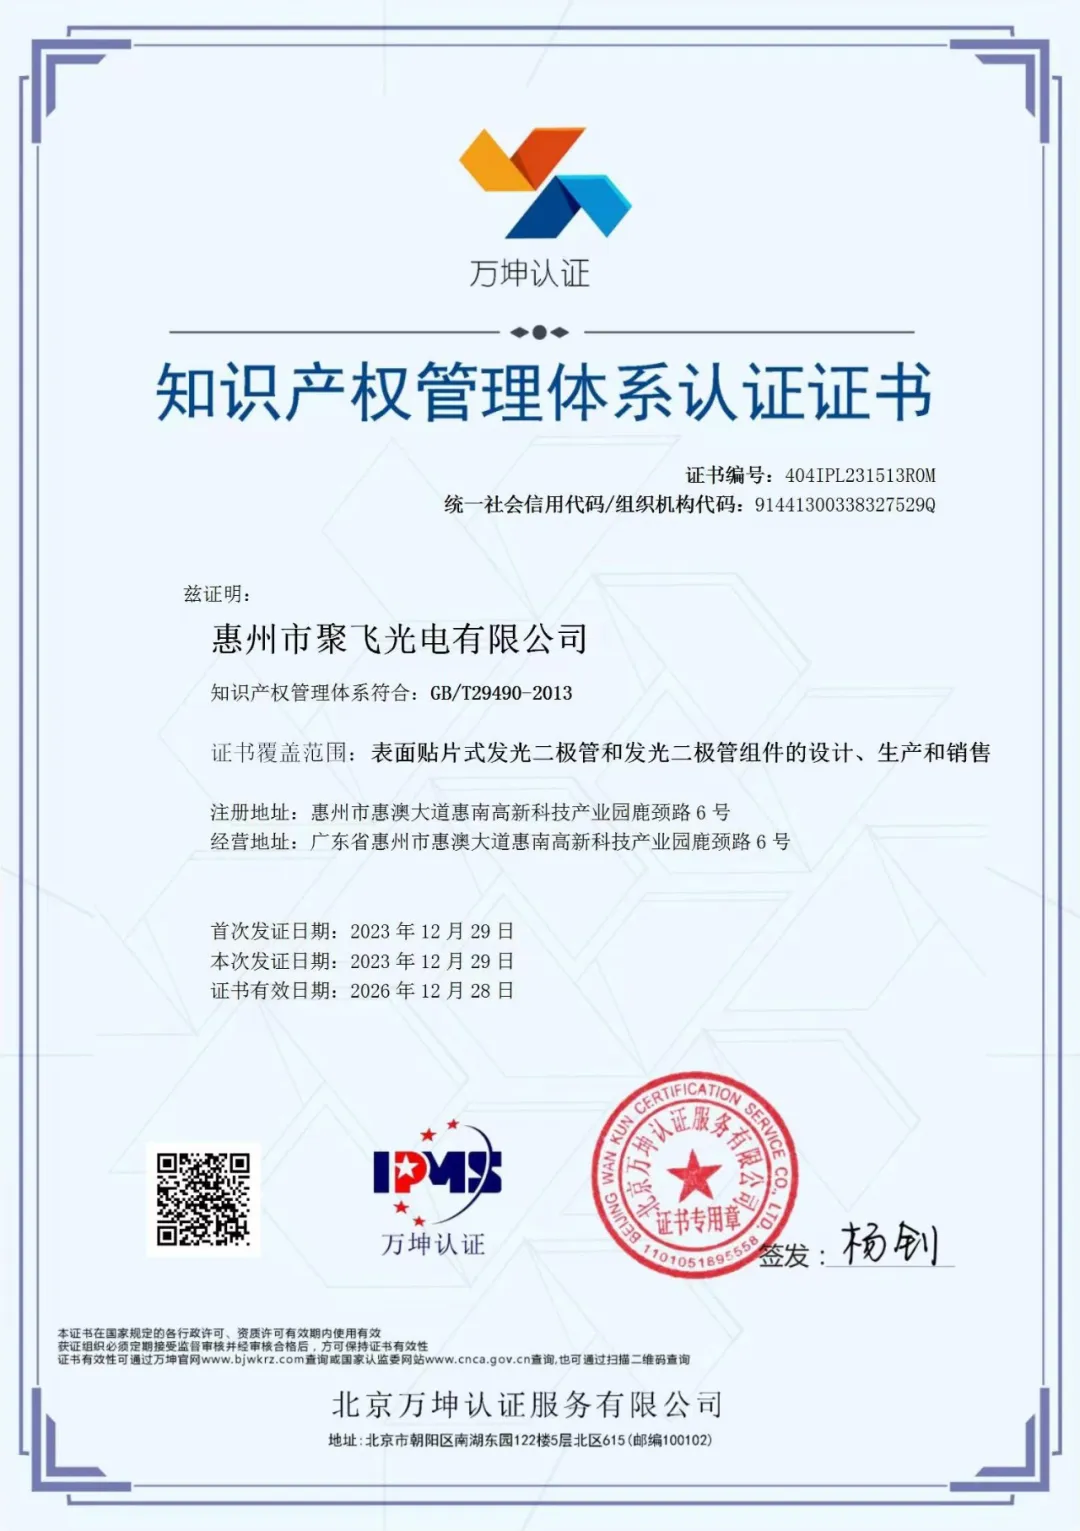 惠州金沙9001cc 以诚为本通过企业知识产权管理规范认证